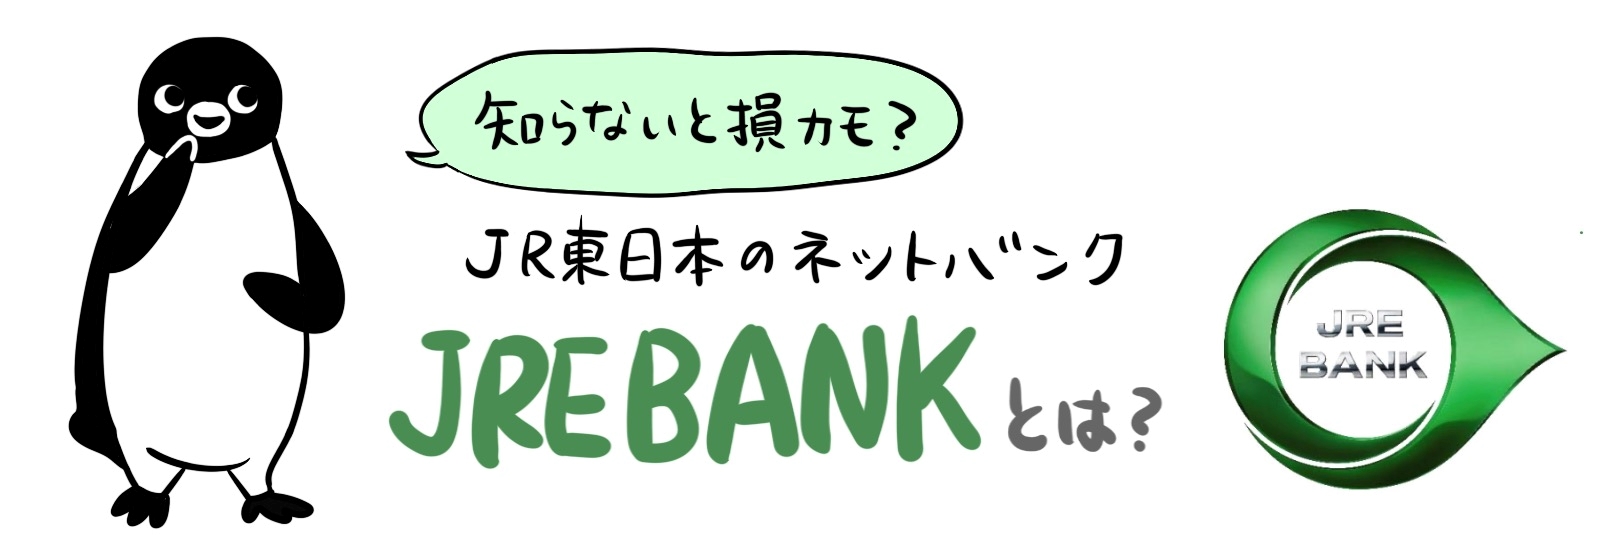 【知らないと損？】JR東日本のネットバンク「JRE BANK」とは？